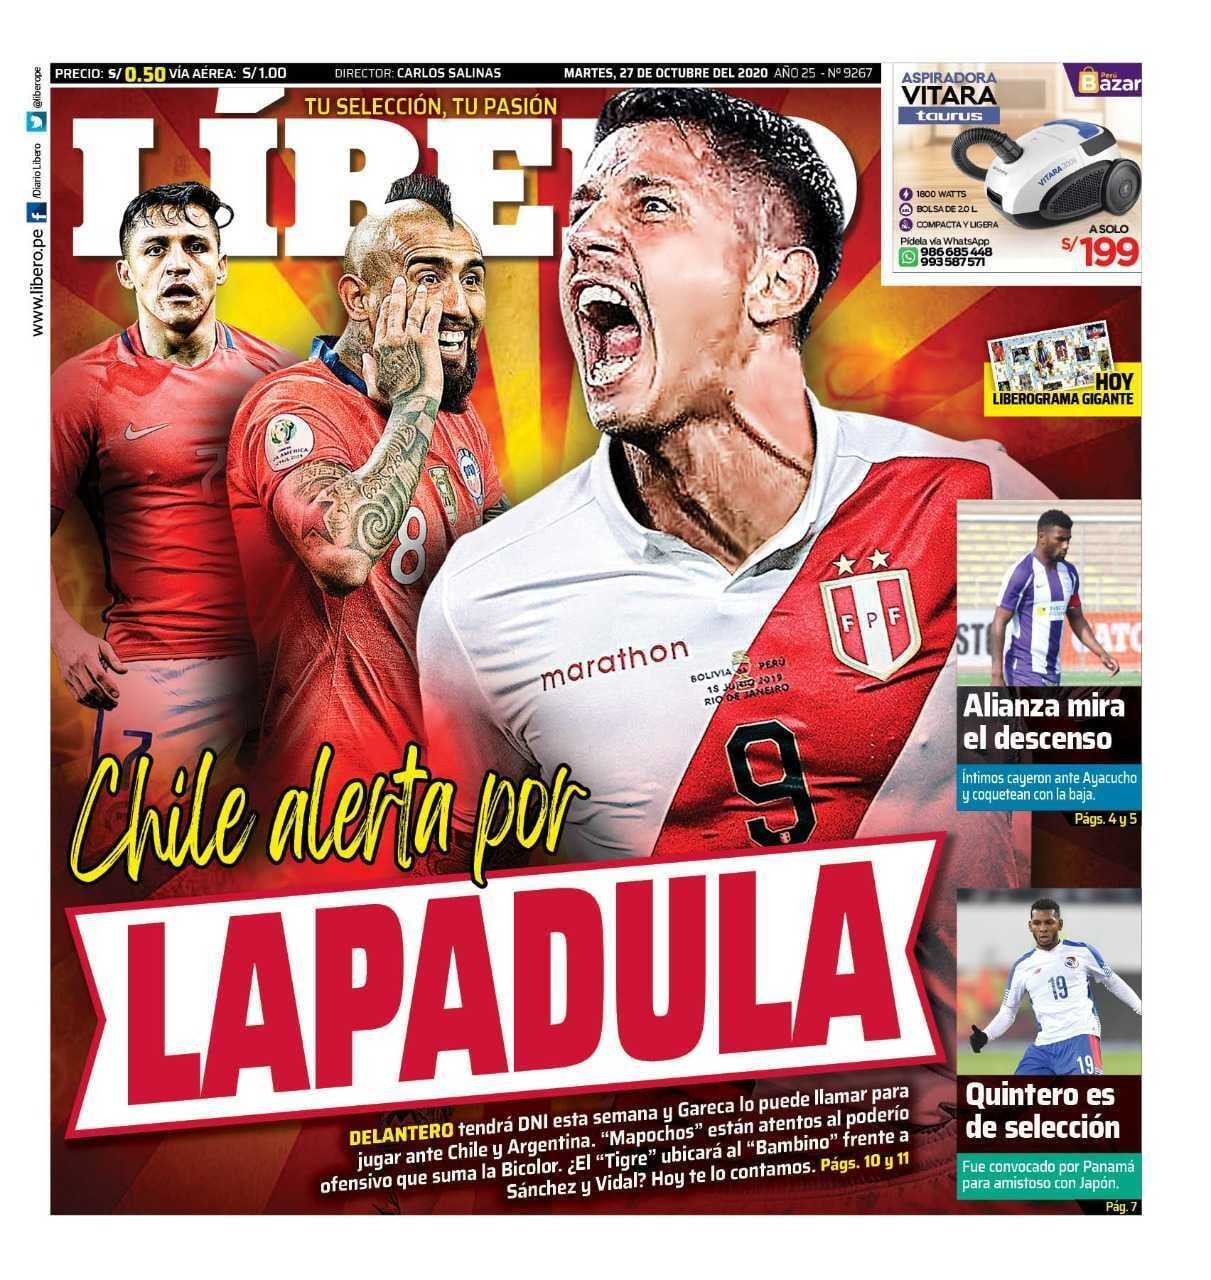 Lapadula tramita nacionalización para jugar por la selección peruana.